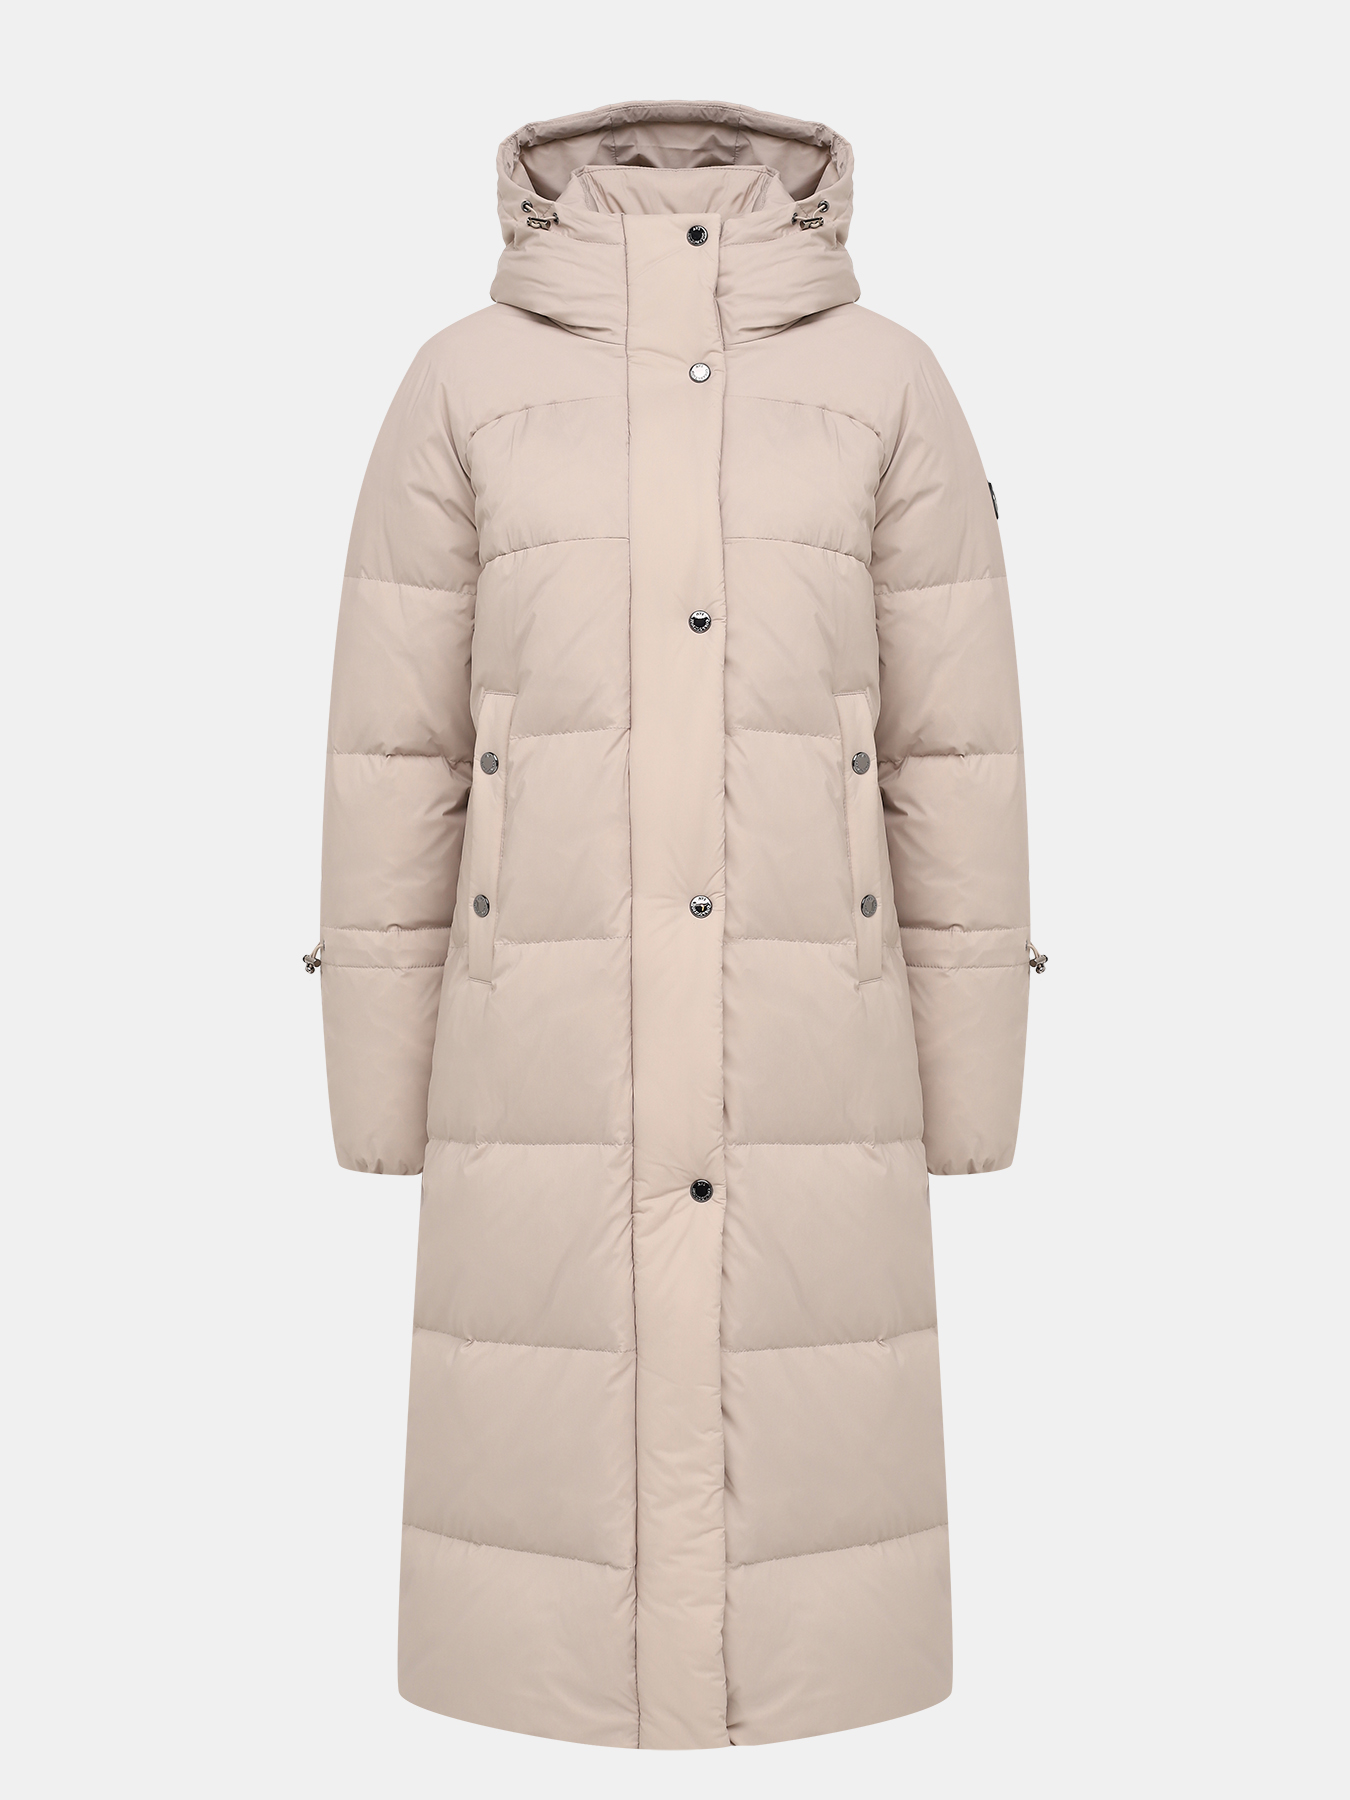 Пальто зимнее AVI 433604-021, цвет бежевый, размер 46